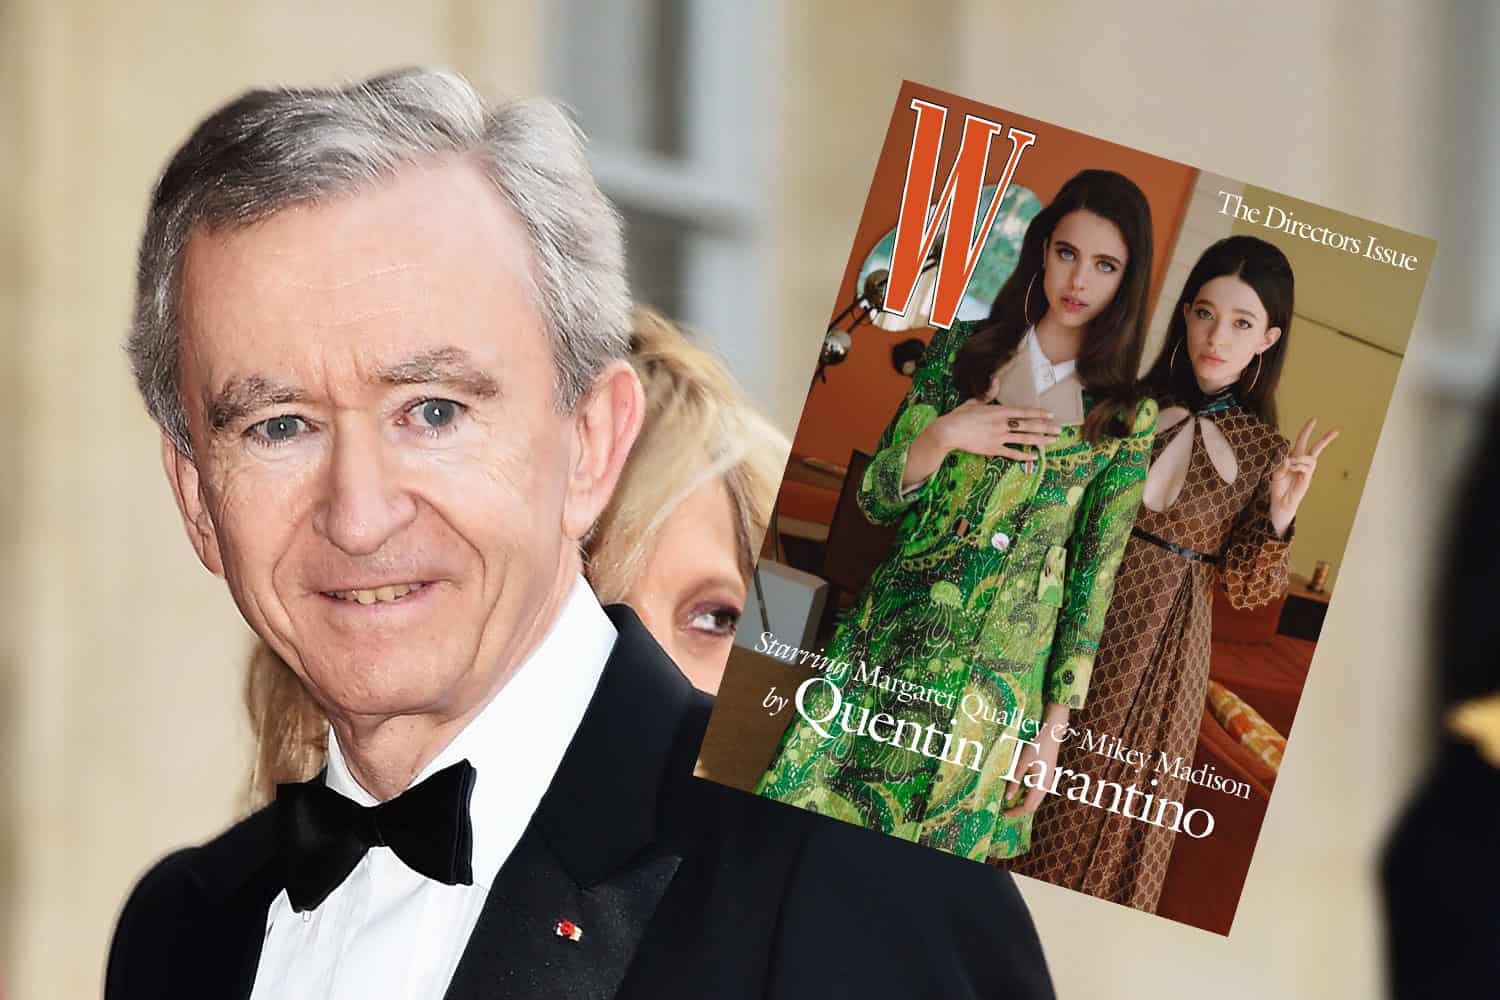 Bernard Arnault's Fortune Up $11 Billion, W Magazine Furloughs Staff